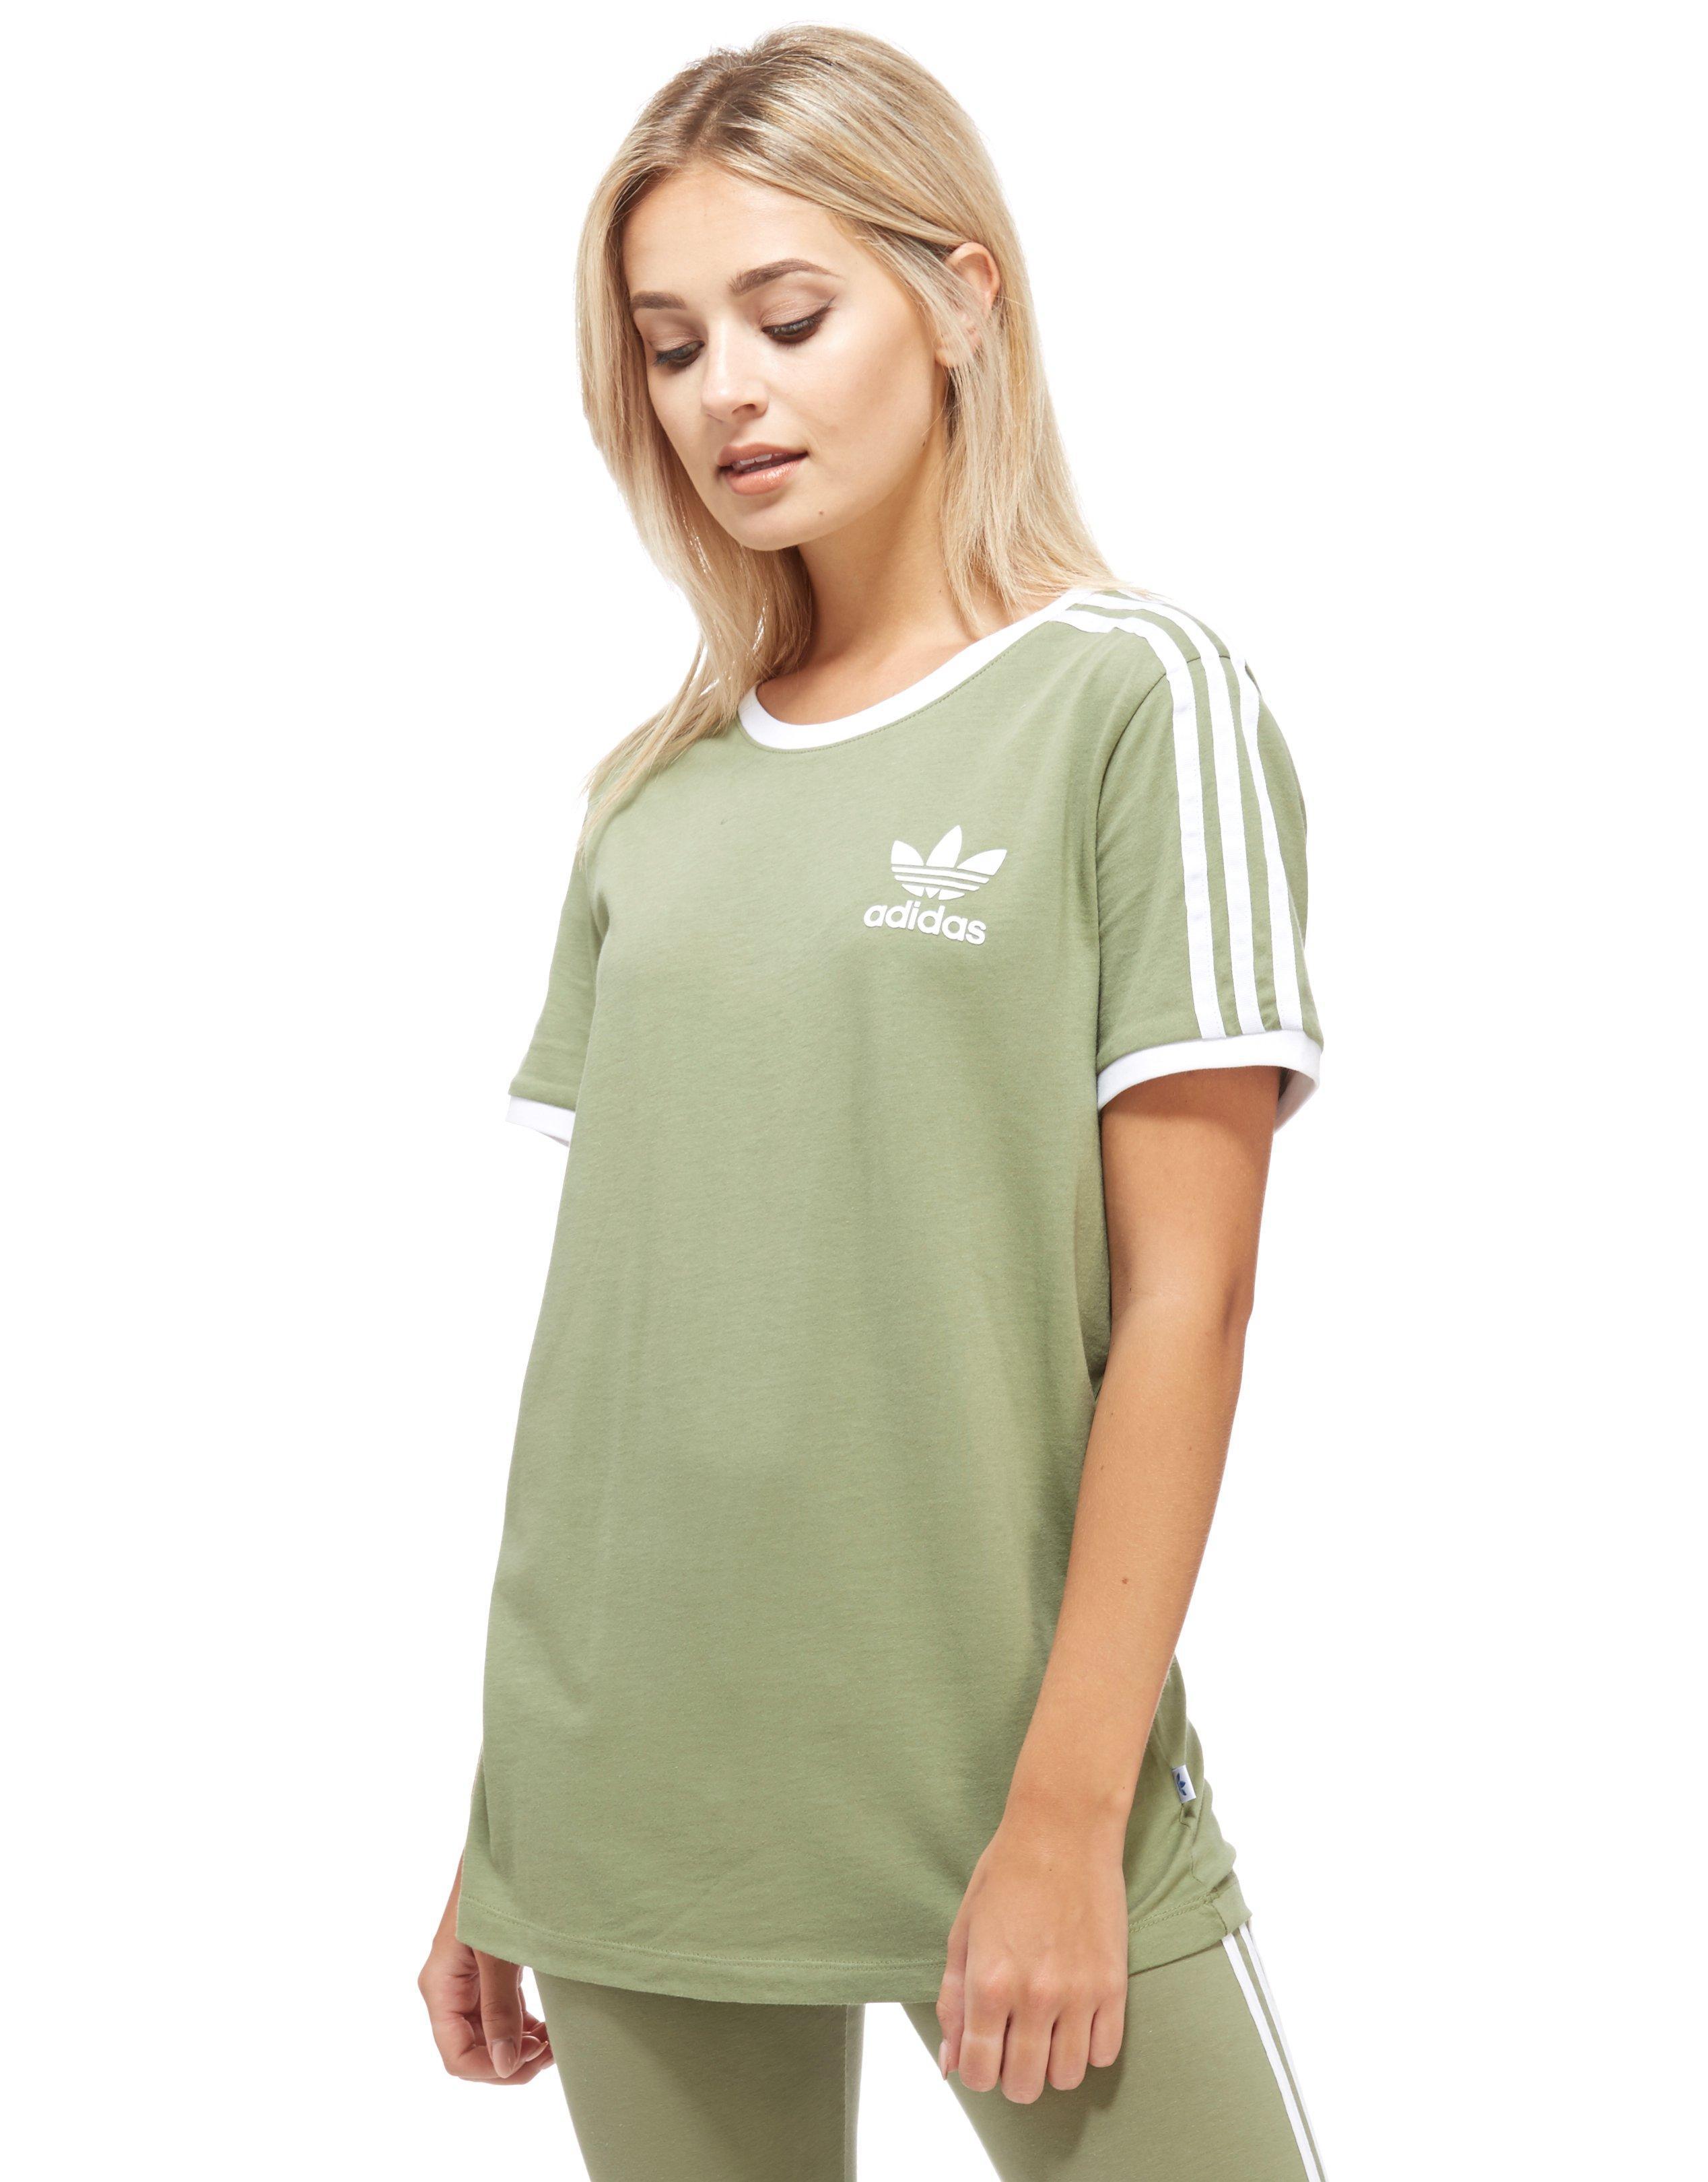 light green adidas shirt